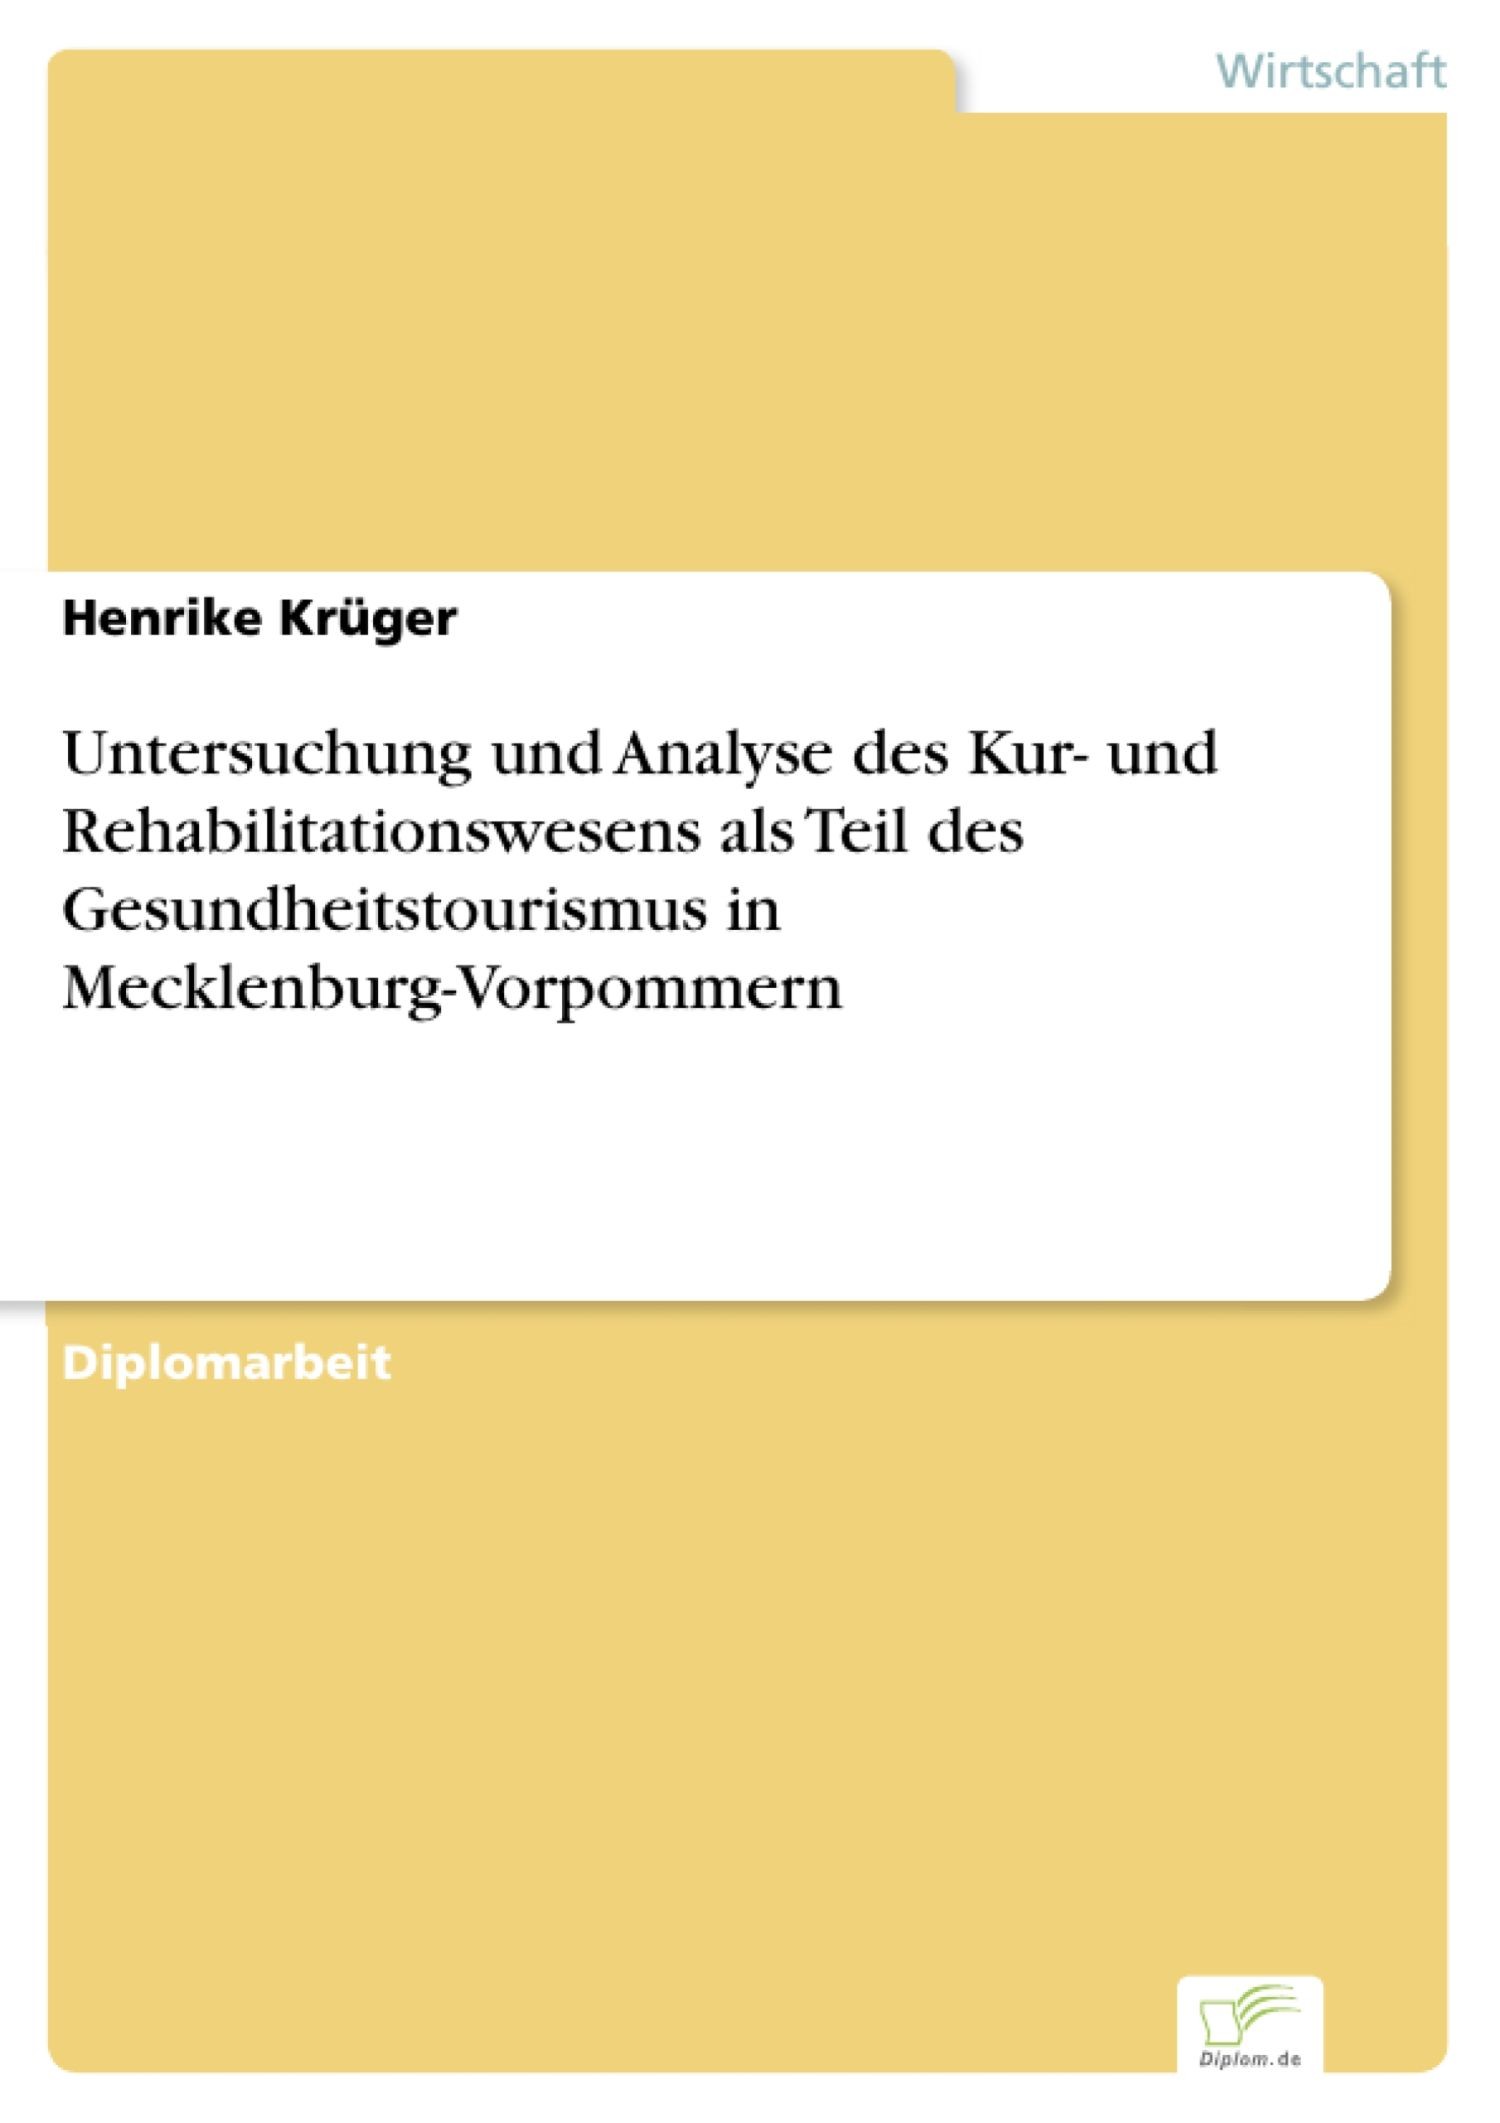 Untersuchung und Analyse des Kur- und Rehabilitationswesens als Teil des Gesundheitstourismus in Mecklenburg-Vorpommern